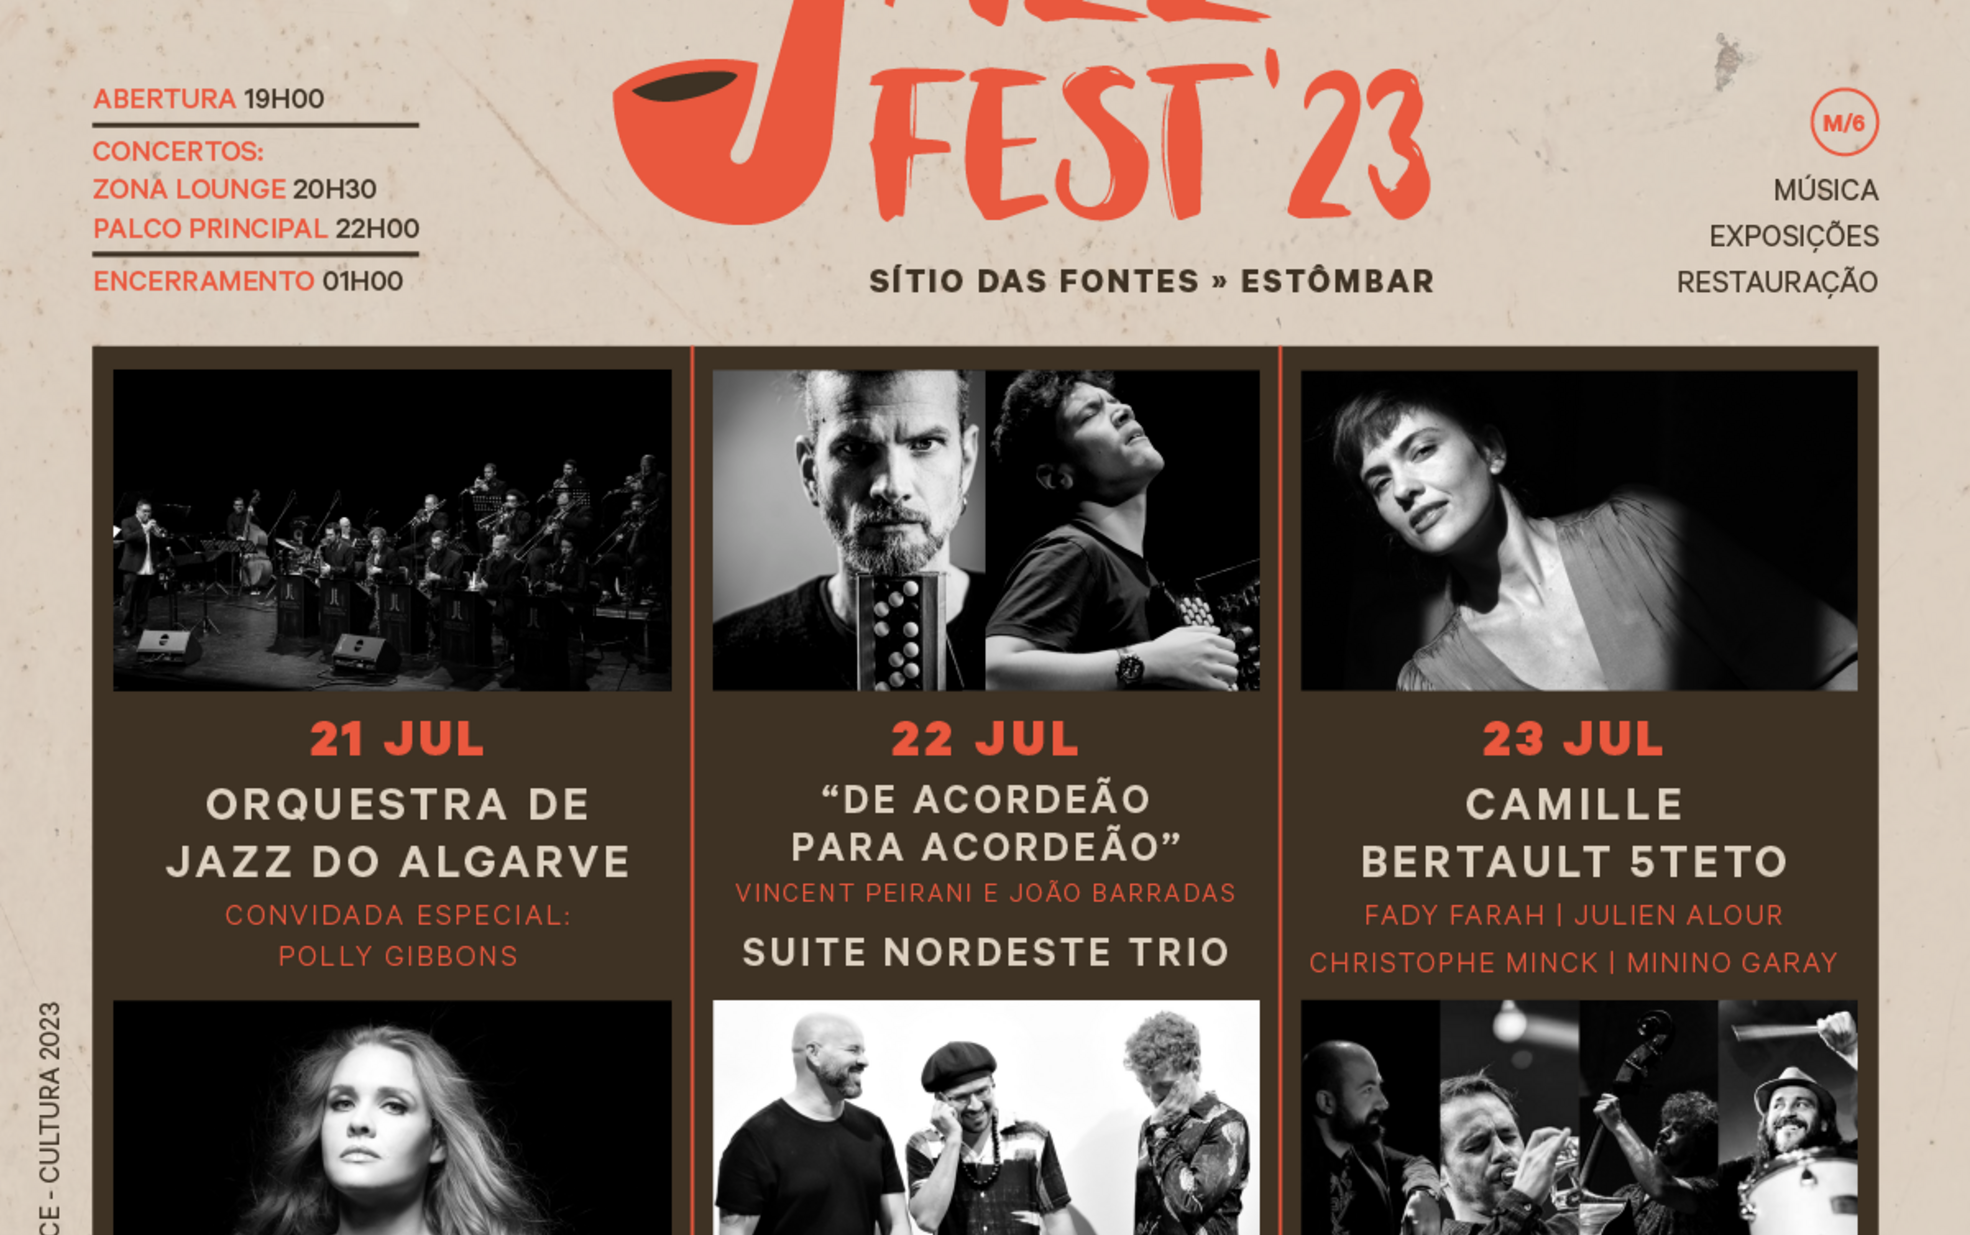 Lagoa Jazz Fest’2023 arranca no próximo fim-de-semana